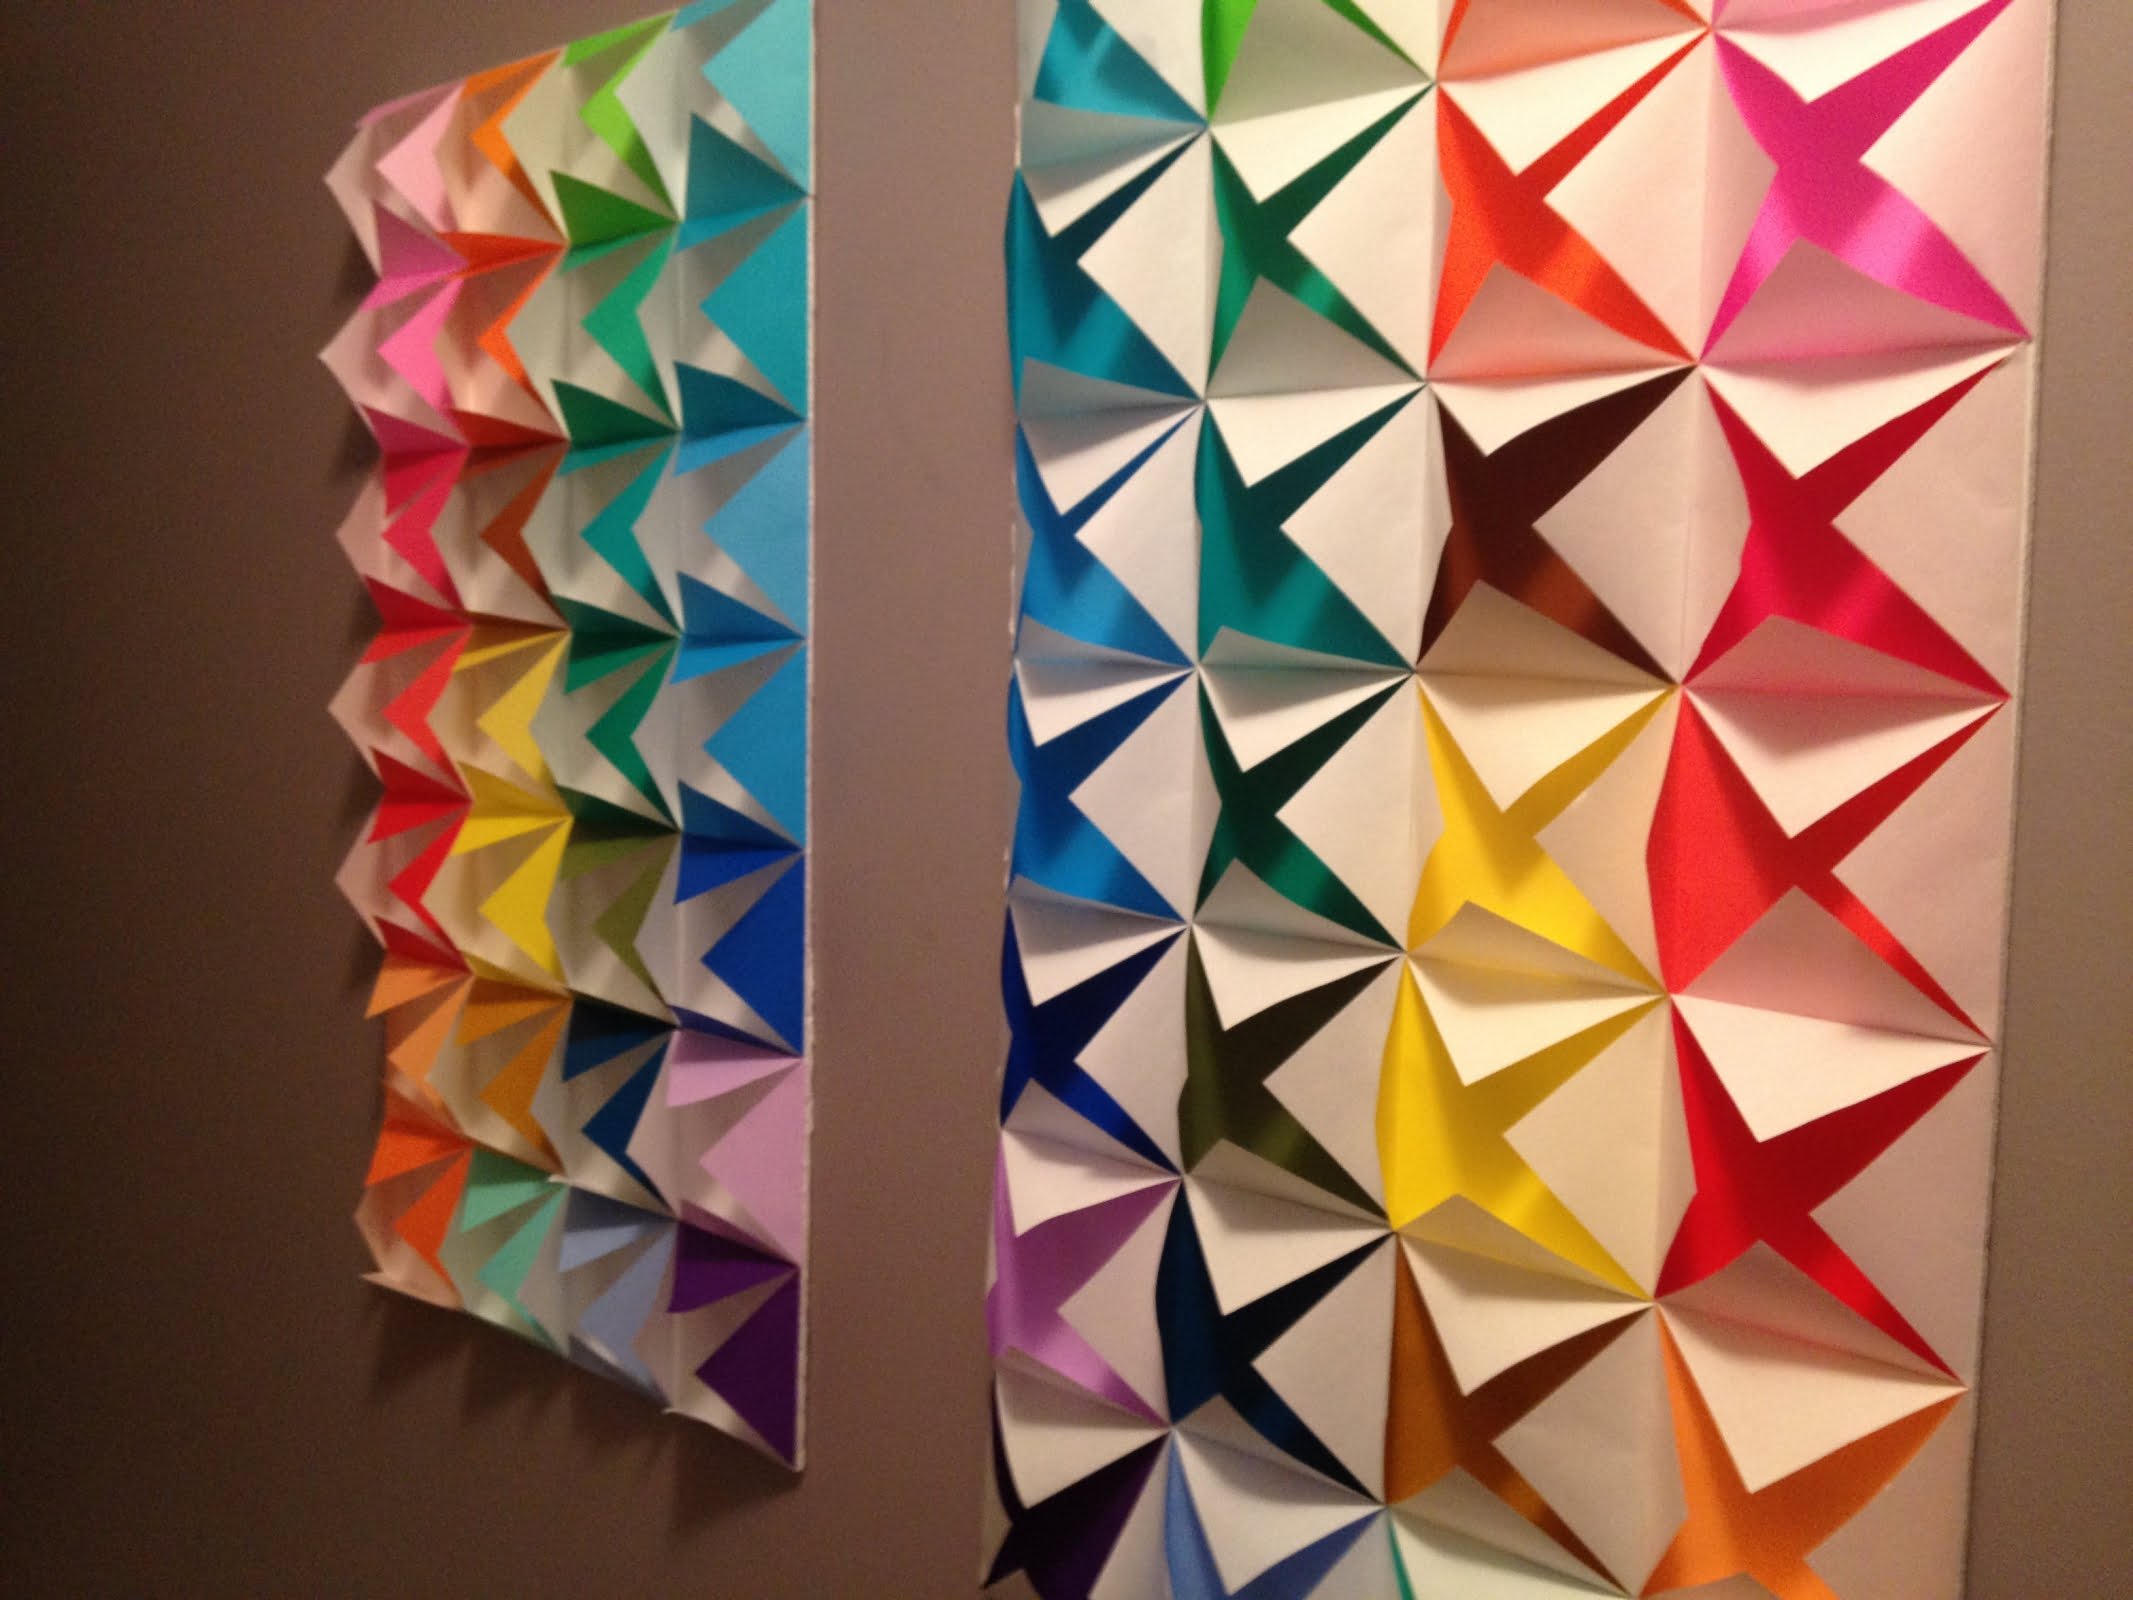 44 Populer Dekorasi Kamar Tidur Origami Yang Belum Banyak Diketahui